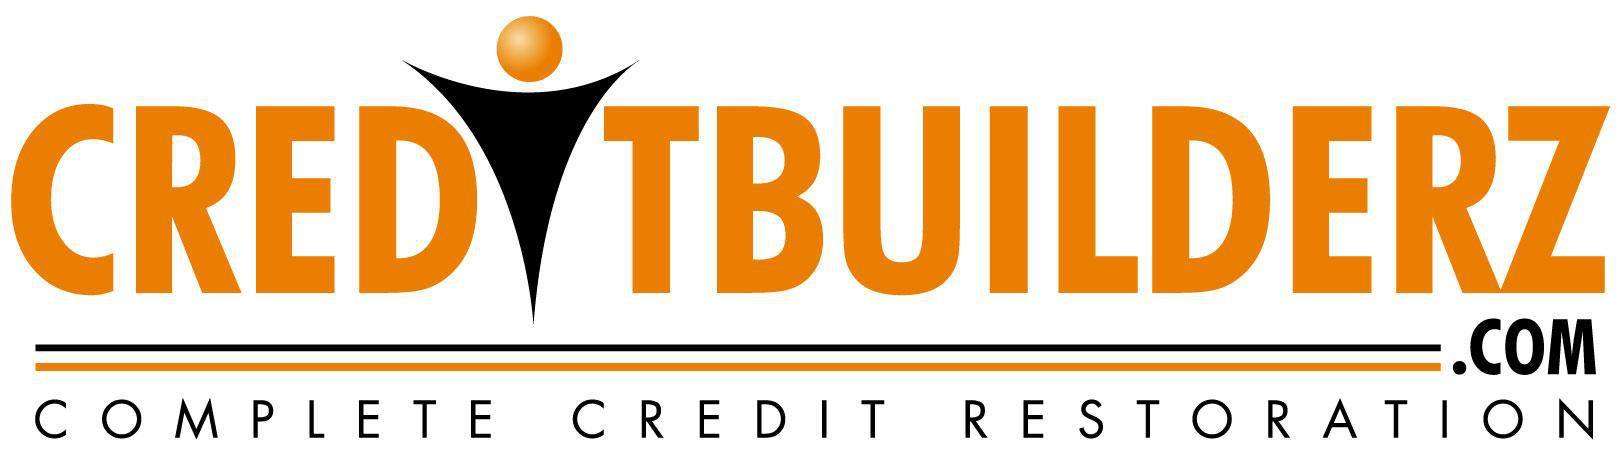 CreditBuilderz.com Logo